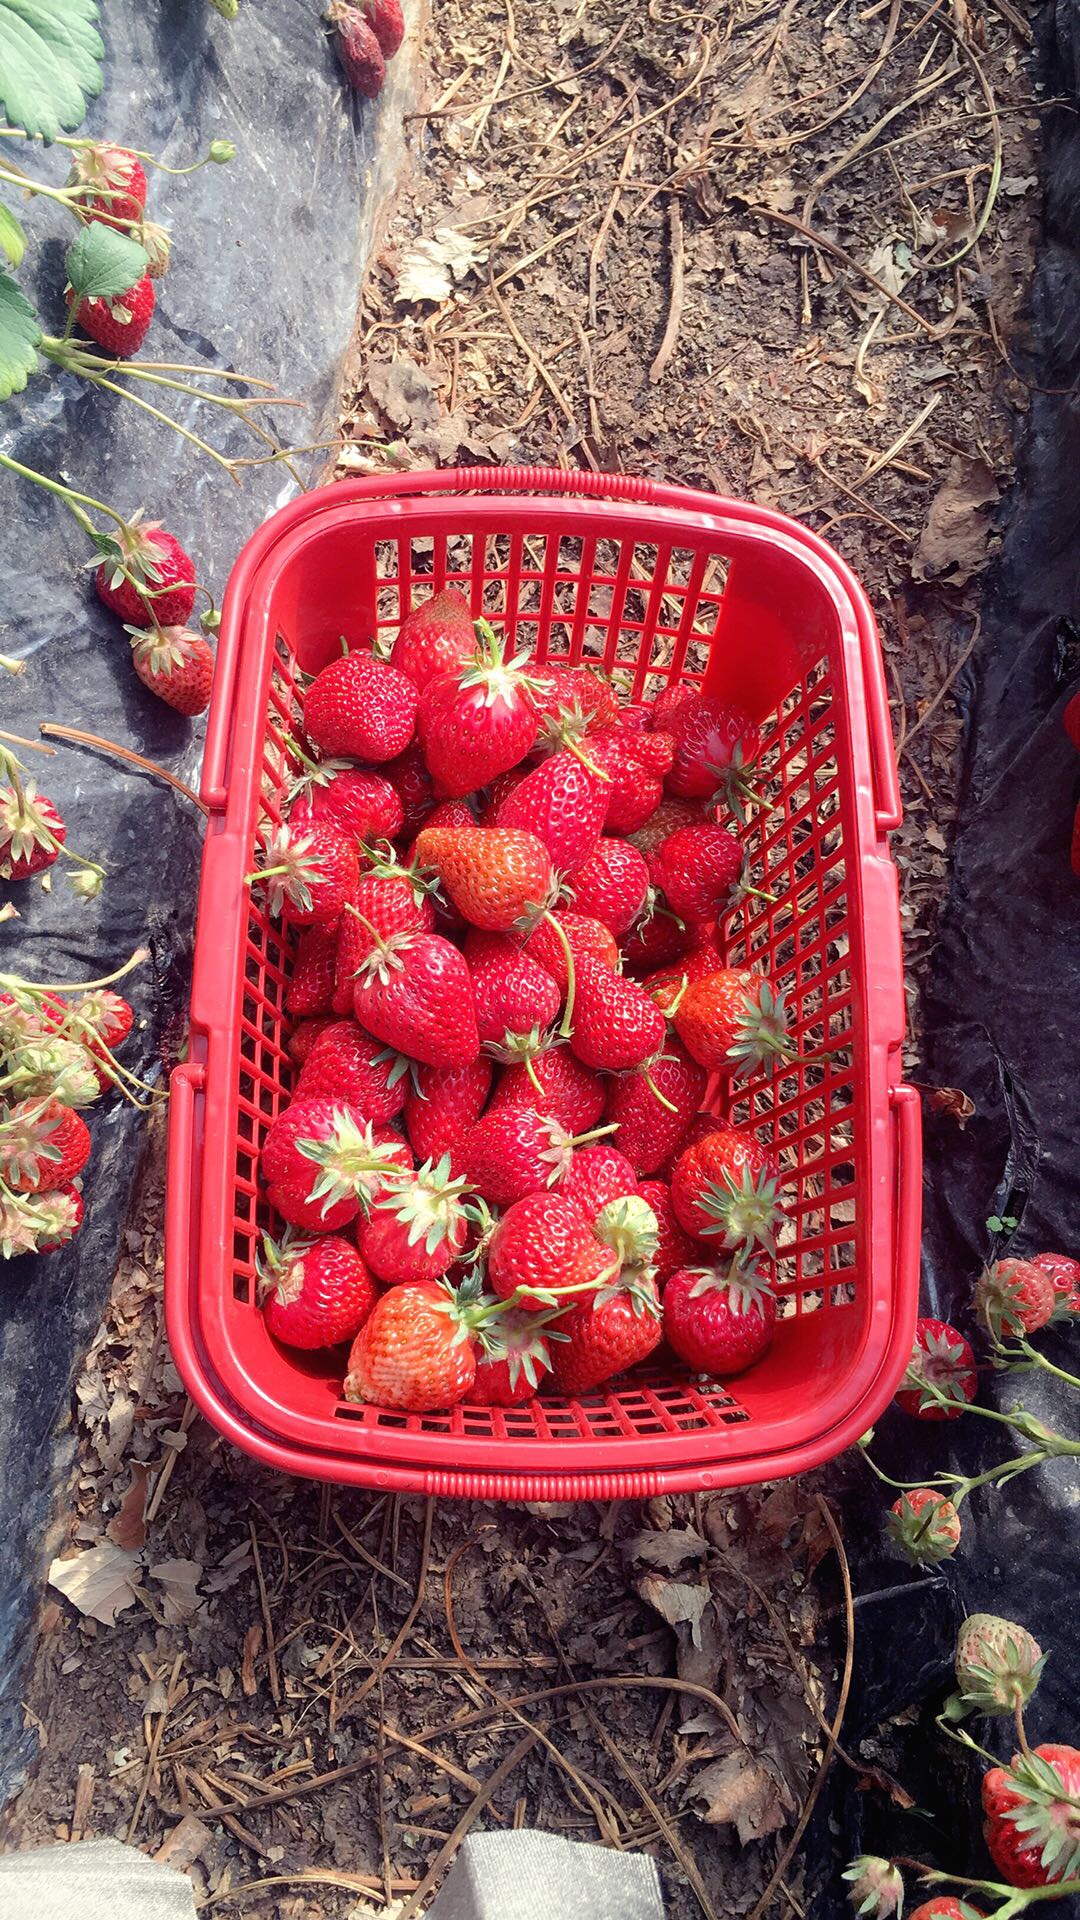 吃草莓会胖吗_一下子吃2斤草莓会怎么样_吃西瓜和草莓会胖吗